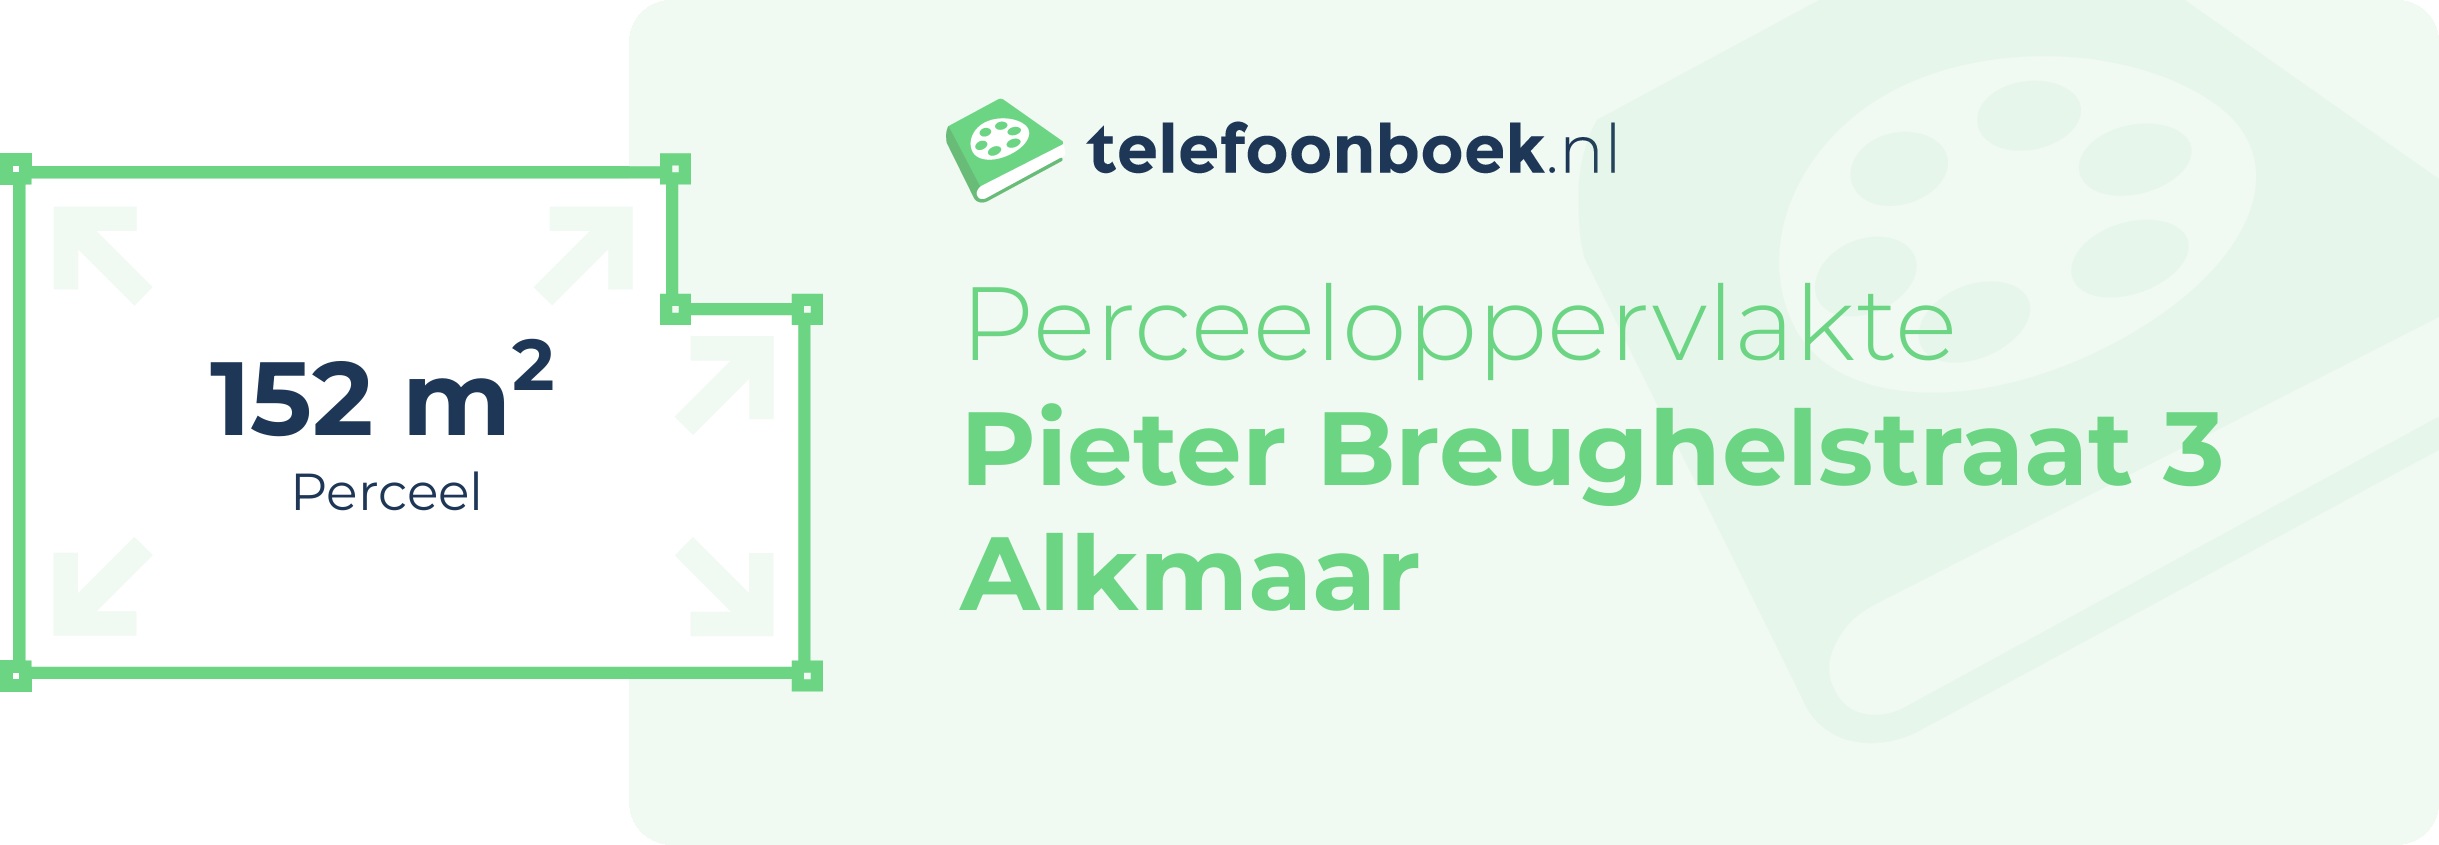 Perceeloppervlakte Pieter Breughelstraat 3 Alkmaar